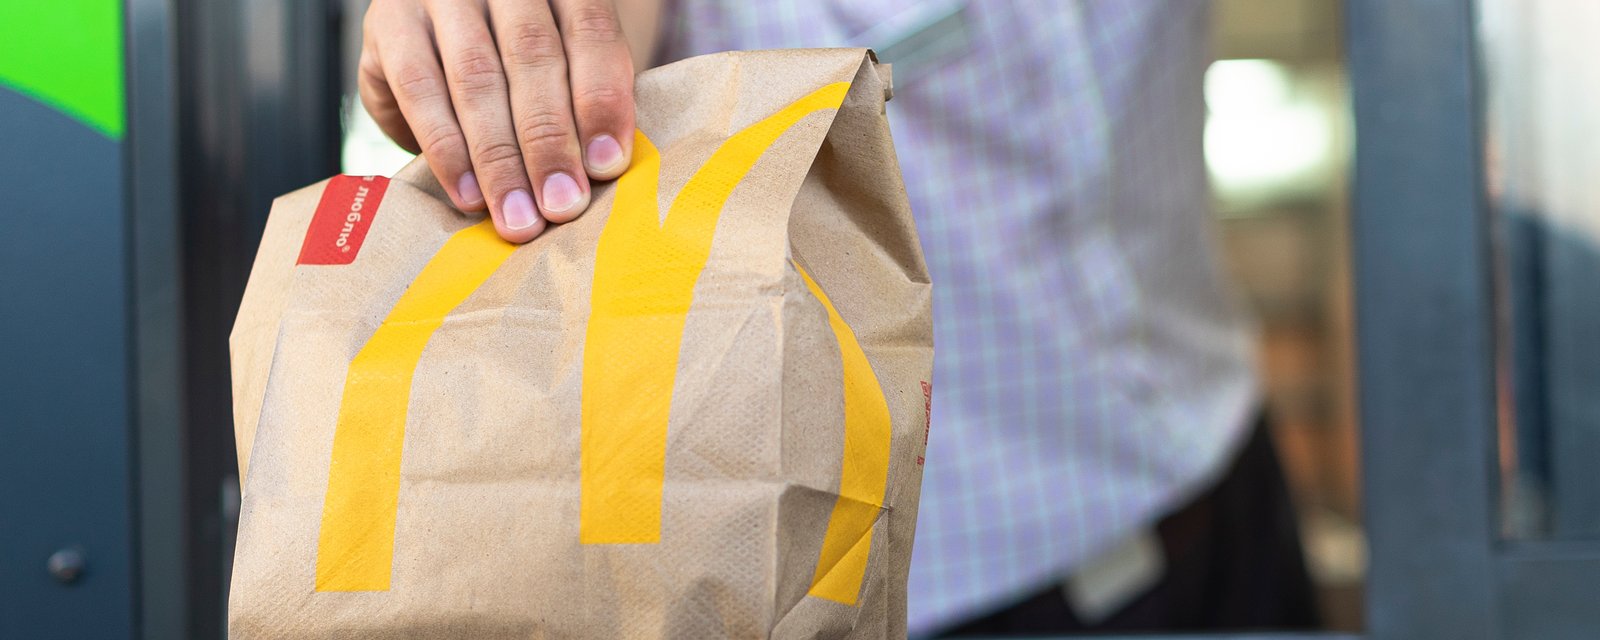 Le Monopoly fait son grand retour chez McDonald's et voici comment participer sans faire d'achats